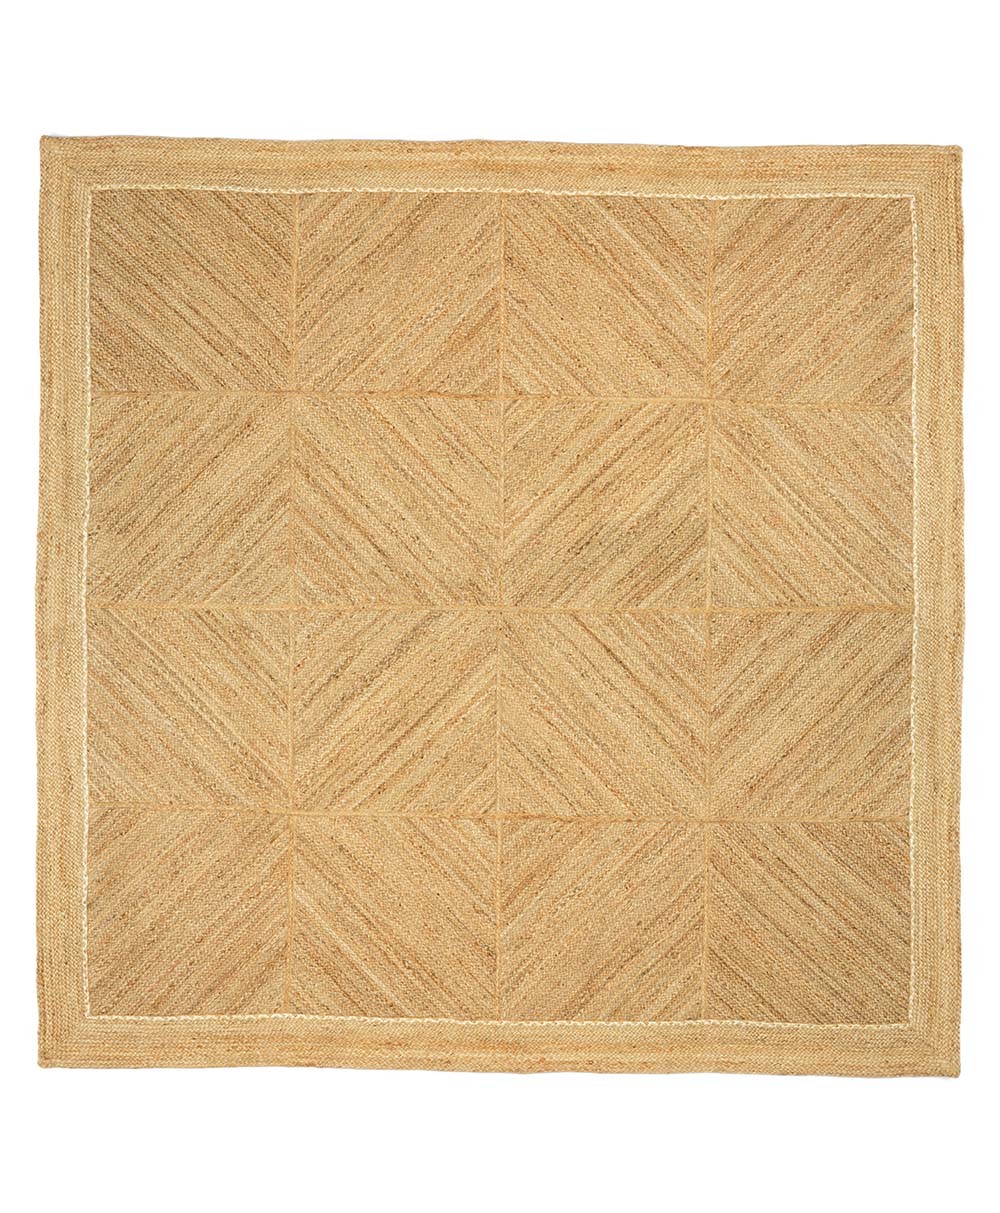 Hier abgebildet ein Produktbild von dem Teppich Coyoacan von der Élitis Kollektion 2024 - RAUM concept store